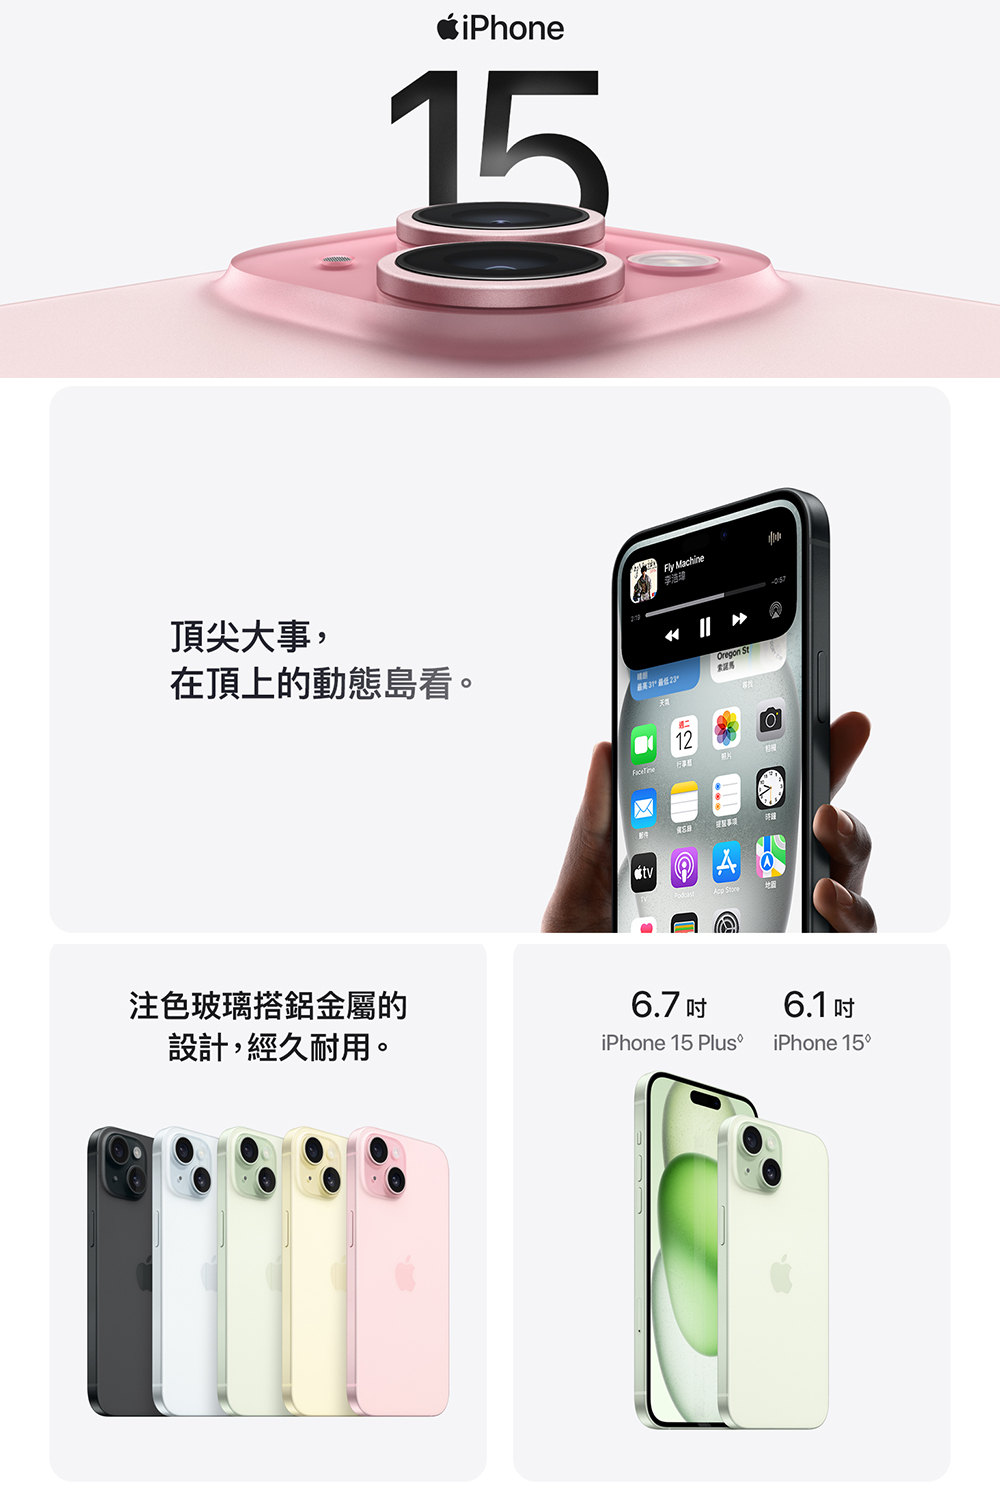 Apple iPhone 15 (128G/6.1吋)(犀牛